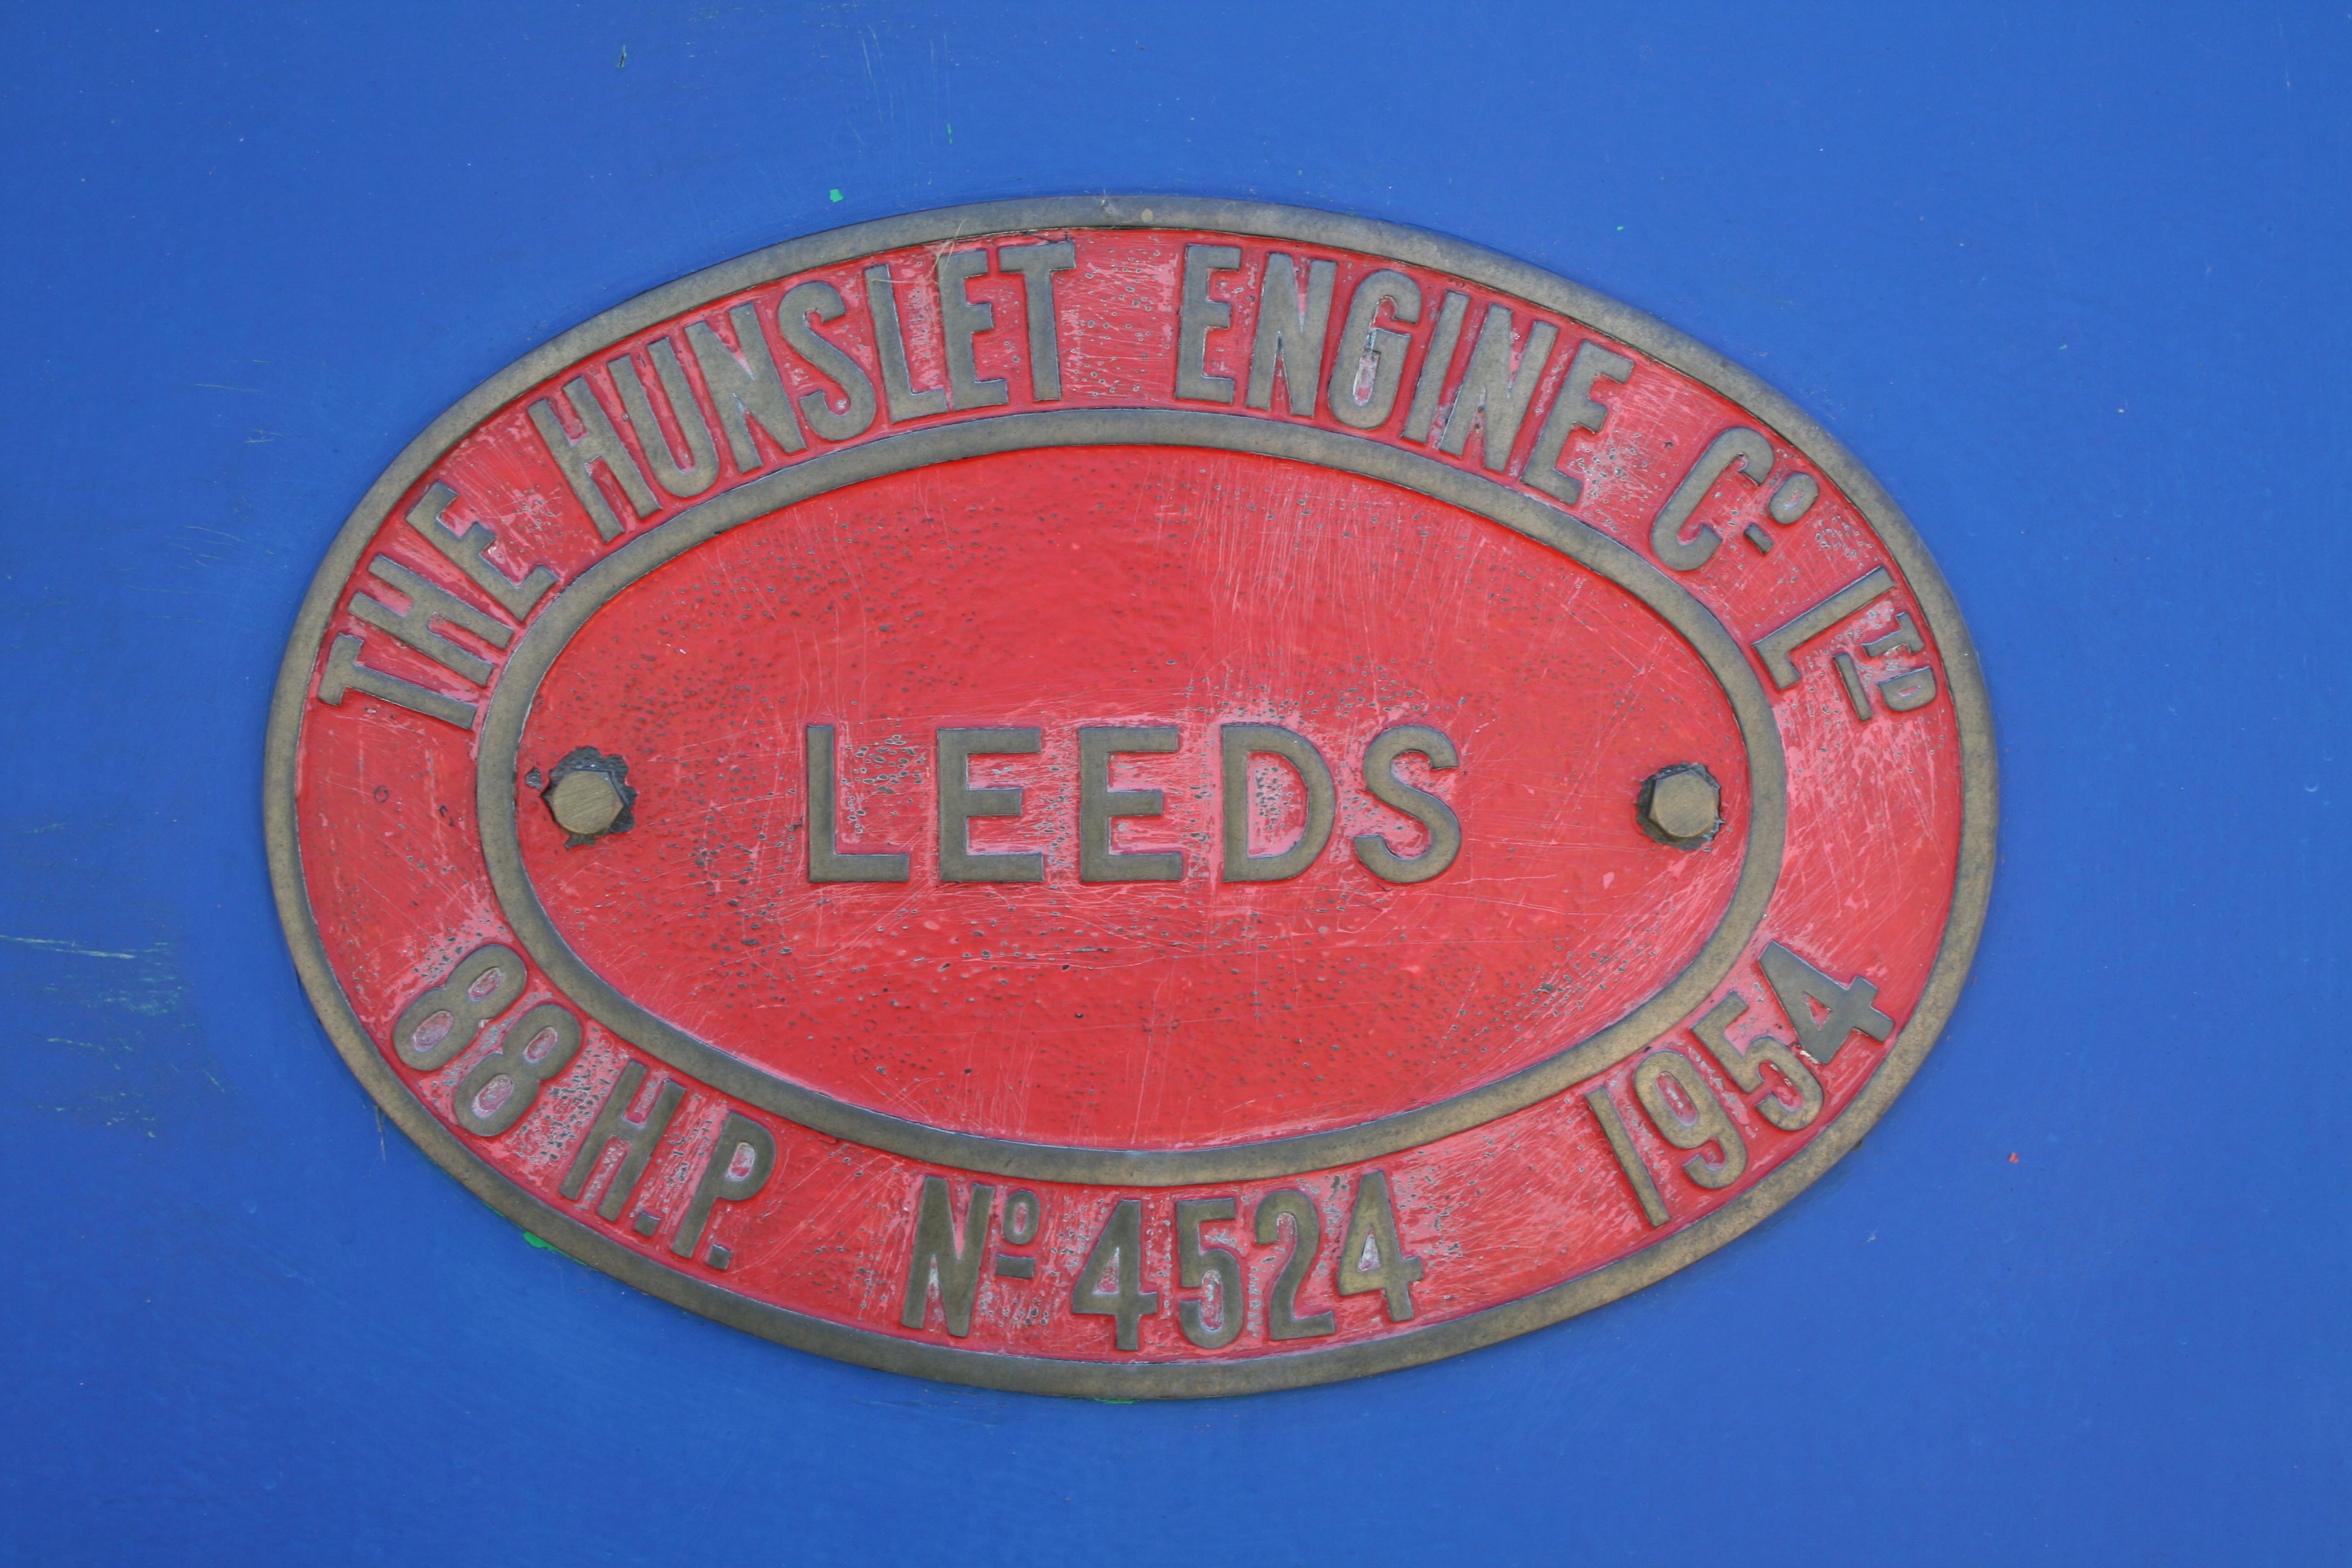 The_Hunslet_Engine_Co._Ltd.,_Leeds._88H.P._No._4524_1954_works_plate.jpg